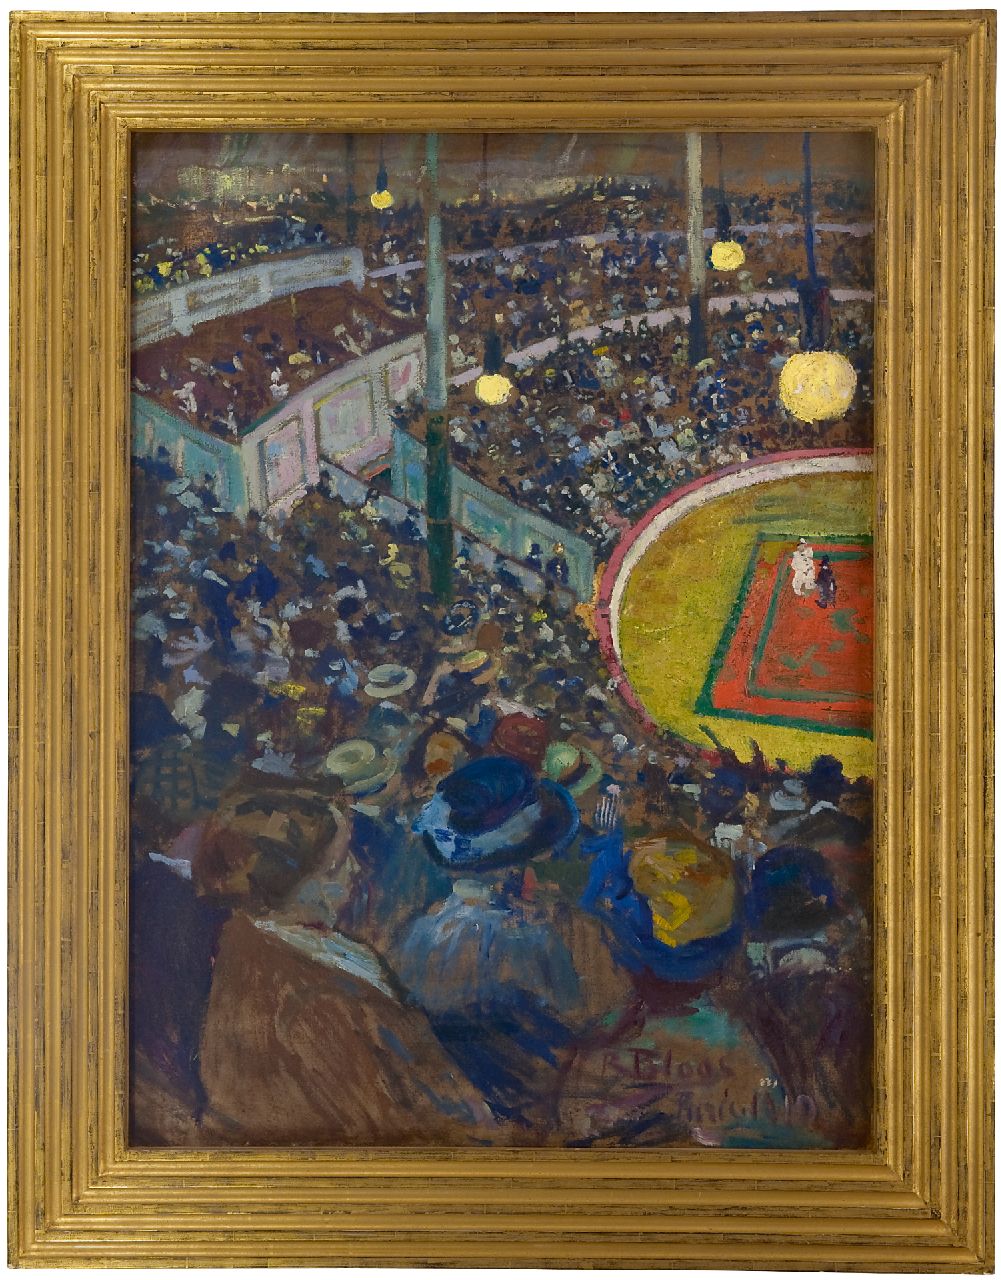 Bloos R.W.  | 'Richard' Willi Bloos | Schilderijen te koop aangeboden | Cirque Médrano, Parijs, olieverf op doek 100,0 x 72,5 cm, gesigneerd rechtsonder en gedateerd 'Paris' 1910